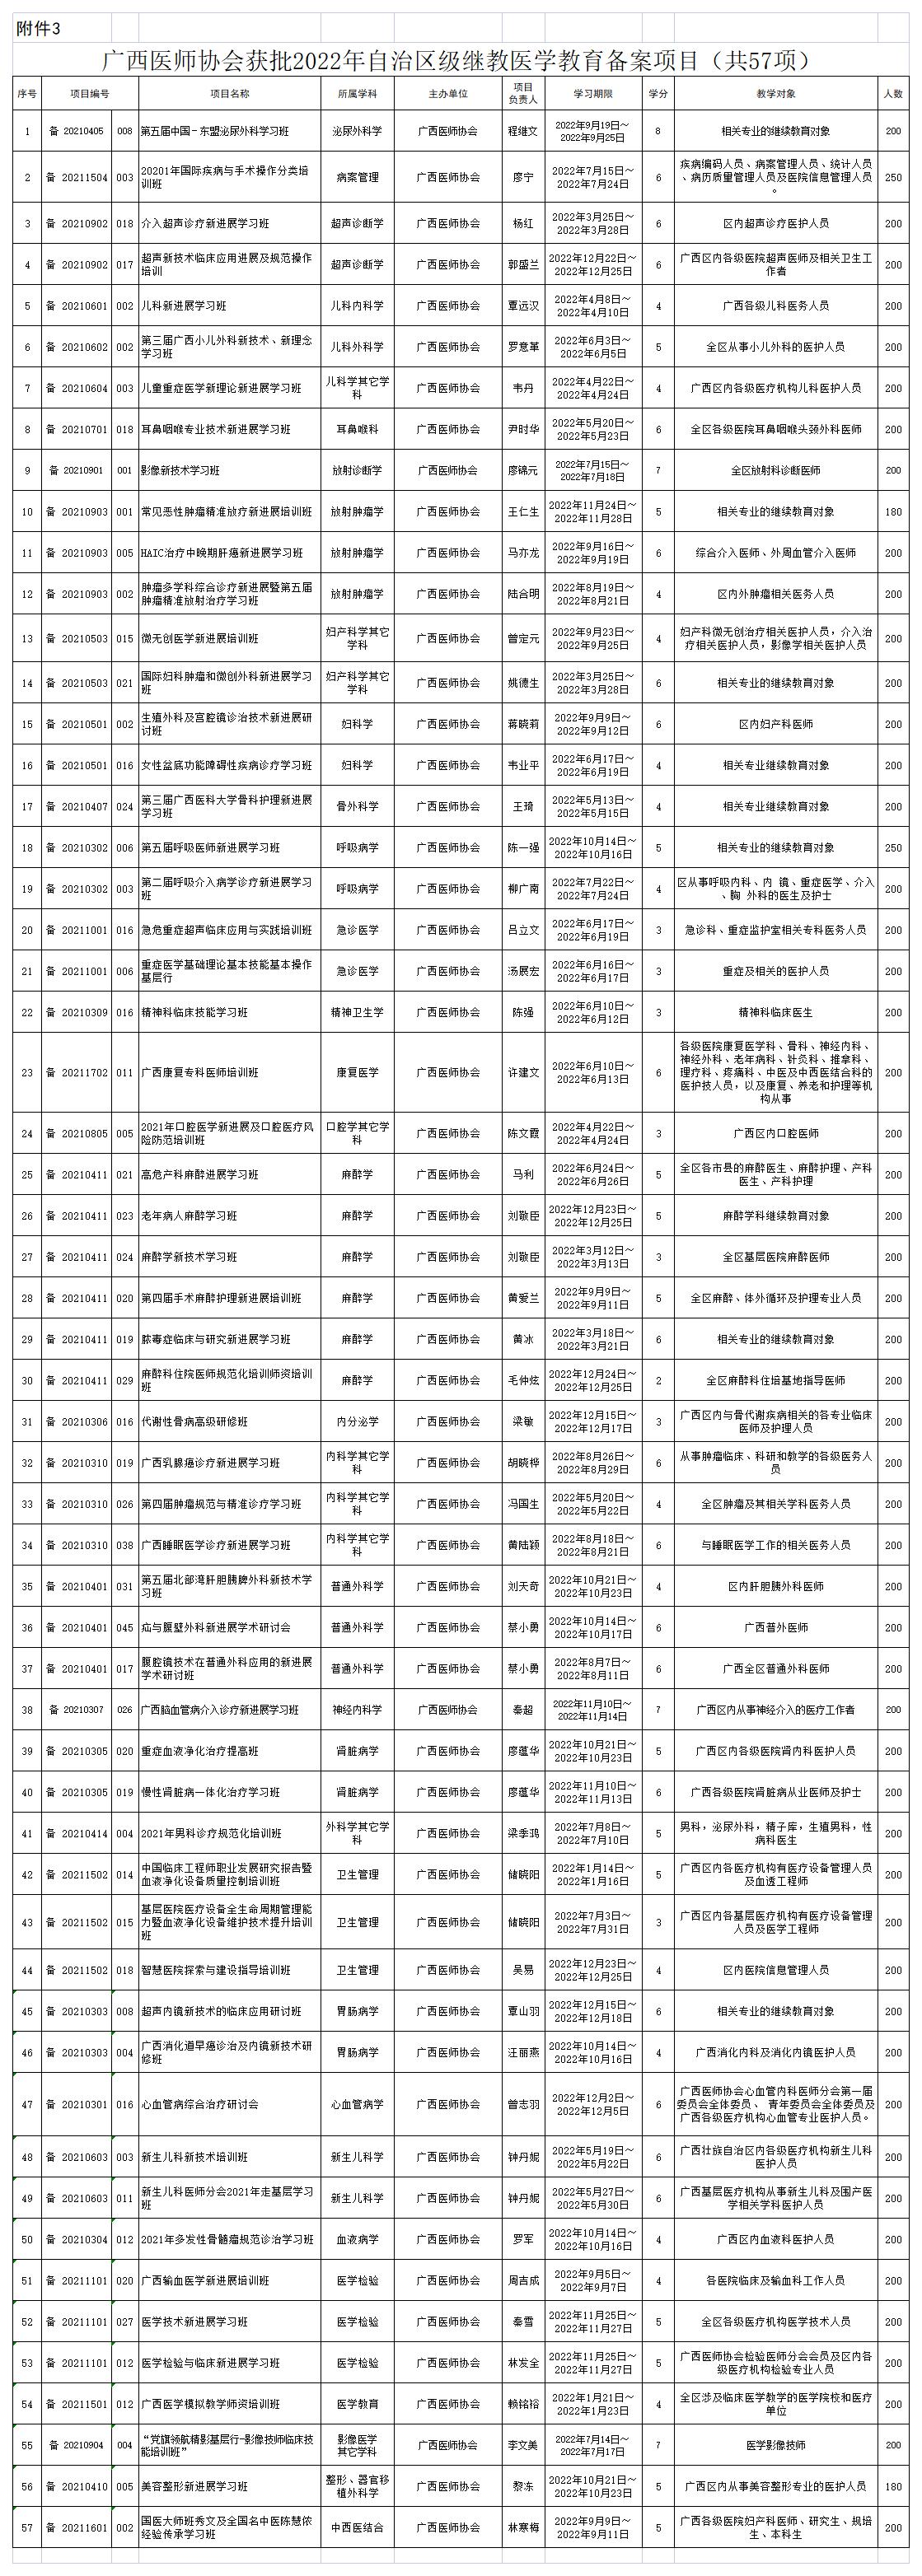 附件3：广西医师协会获批2022年自治区级继教医学教育备案项目（共57项）_A1K61.jpg